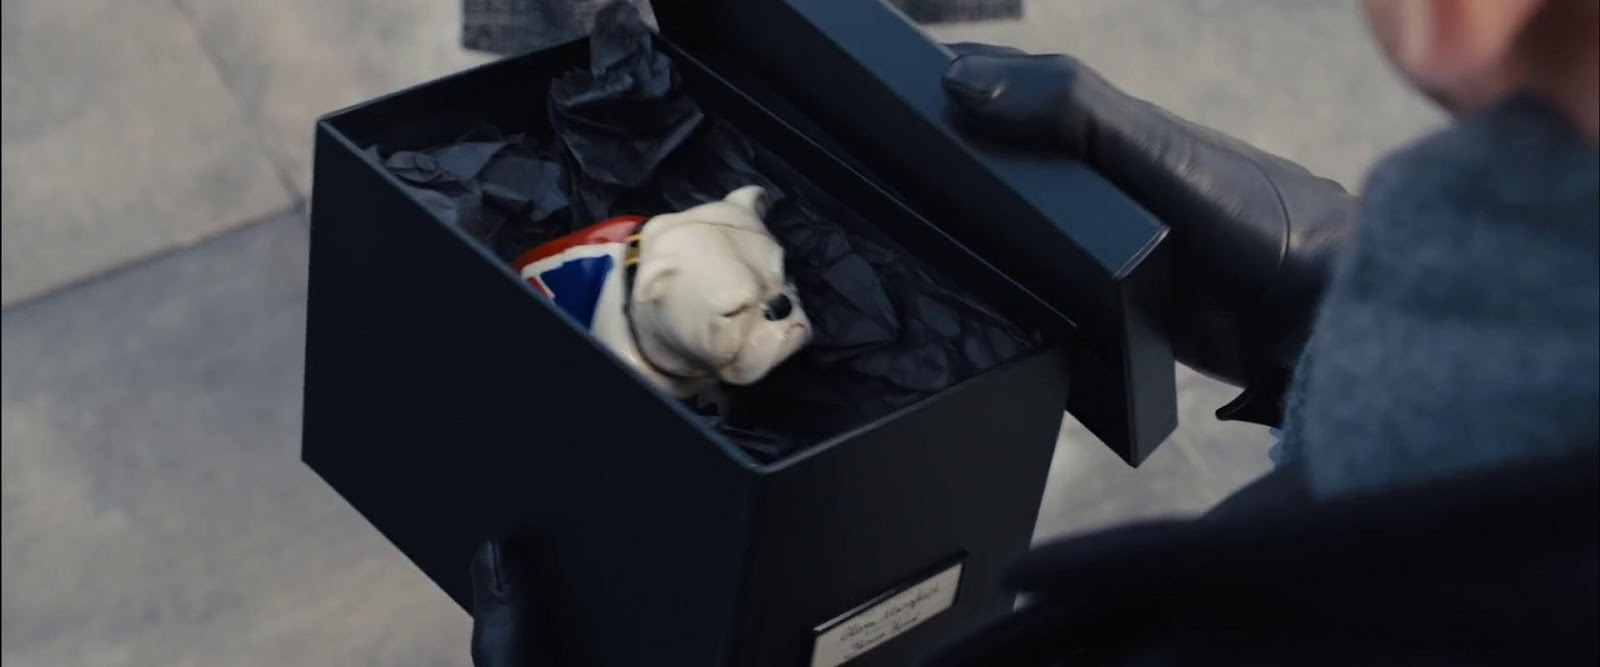 007のブルドック犬の置物 - インテリア小物